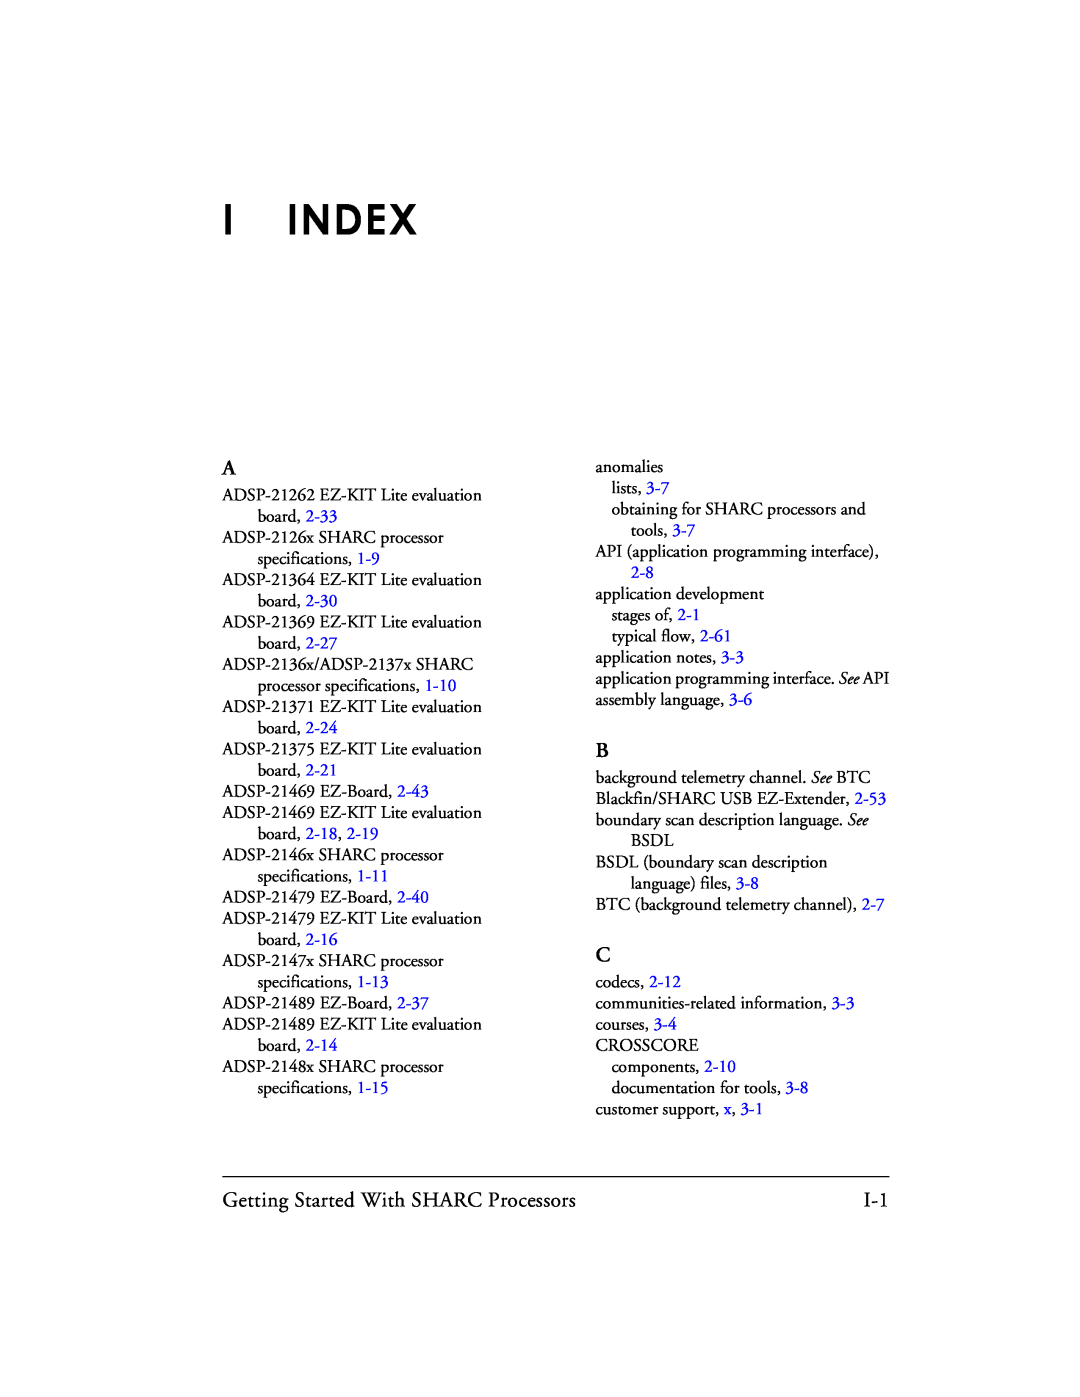 Analog Devices 82-003536-01 manual I Index 